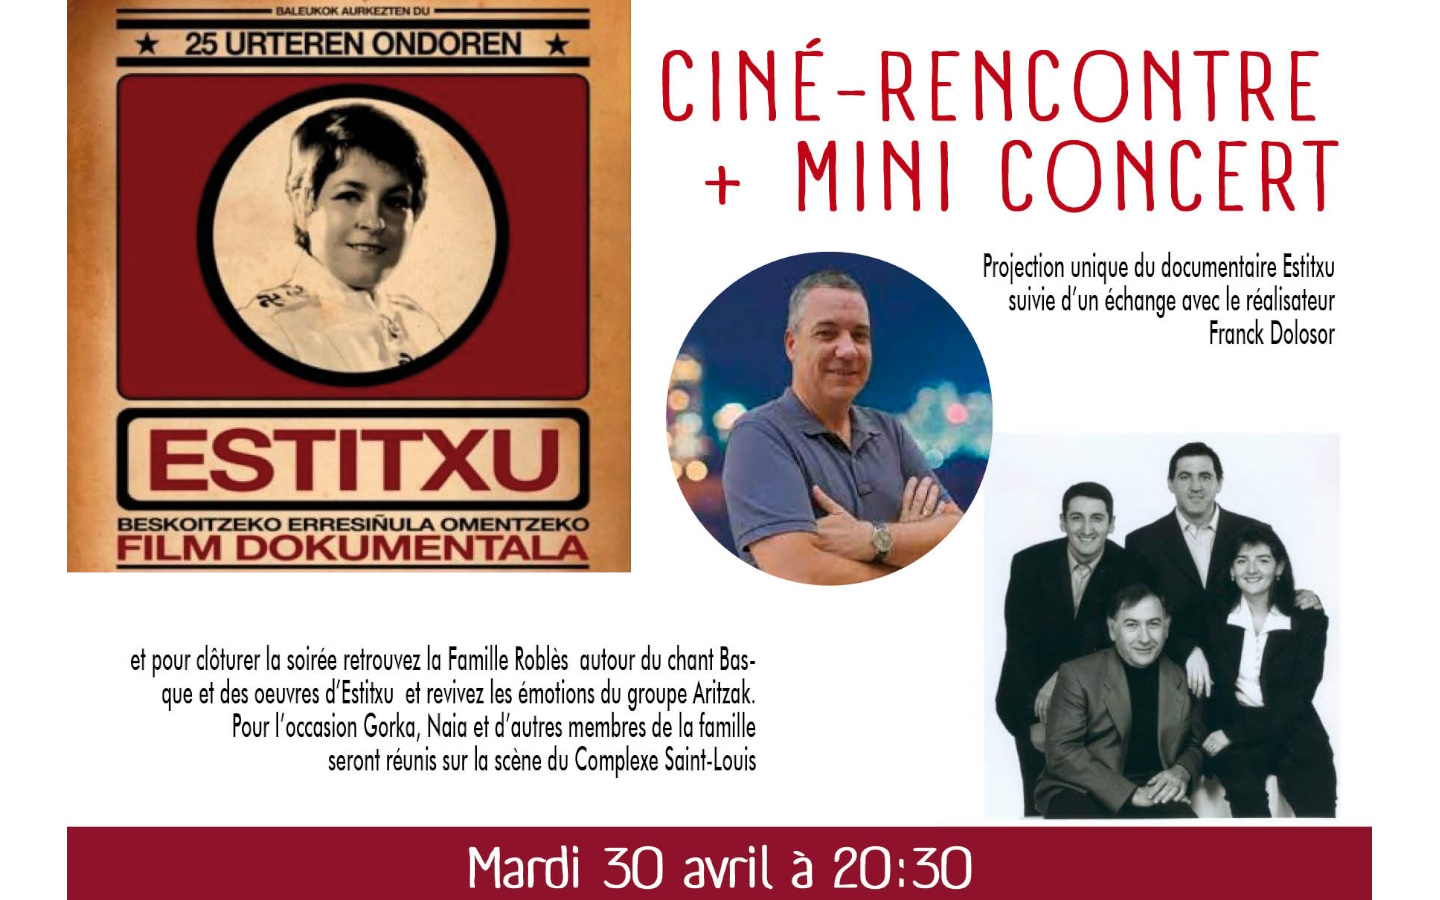 Ciné-rencontre + mini-concert Estitxu